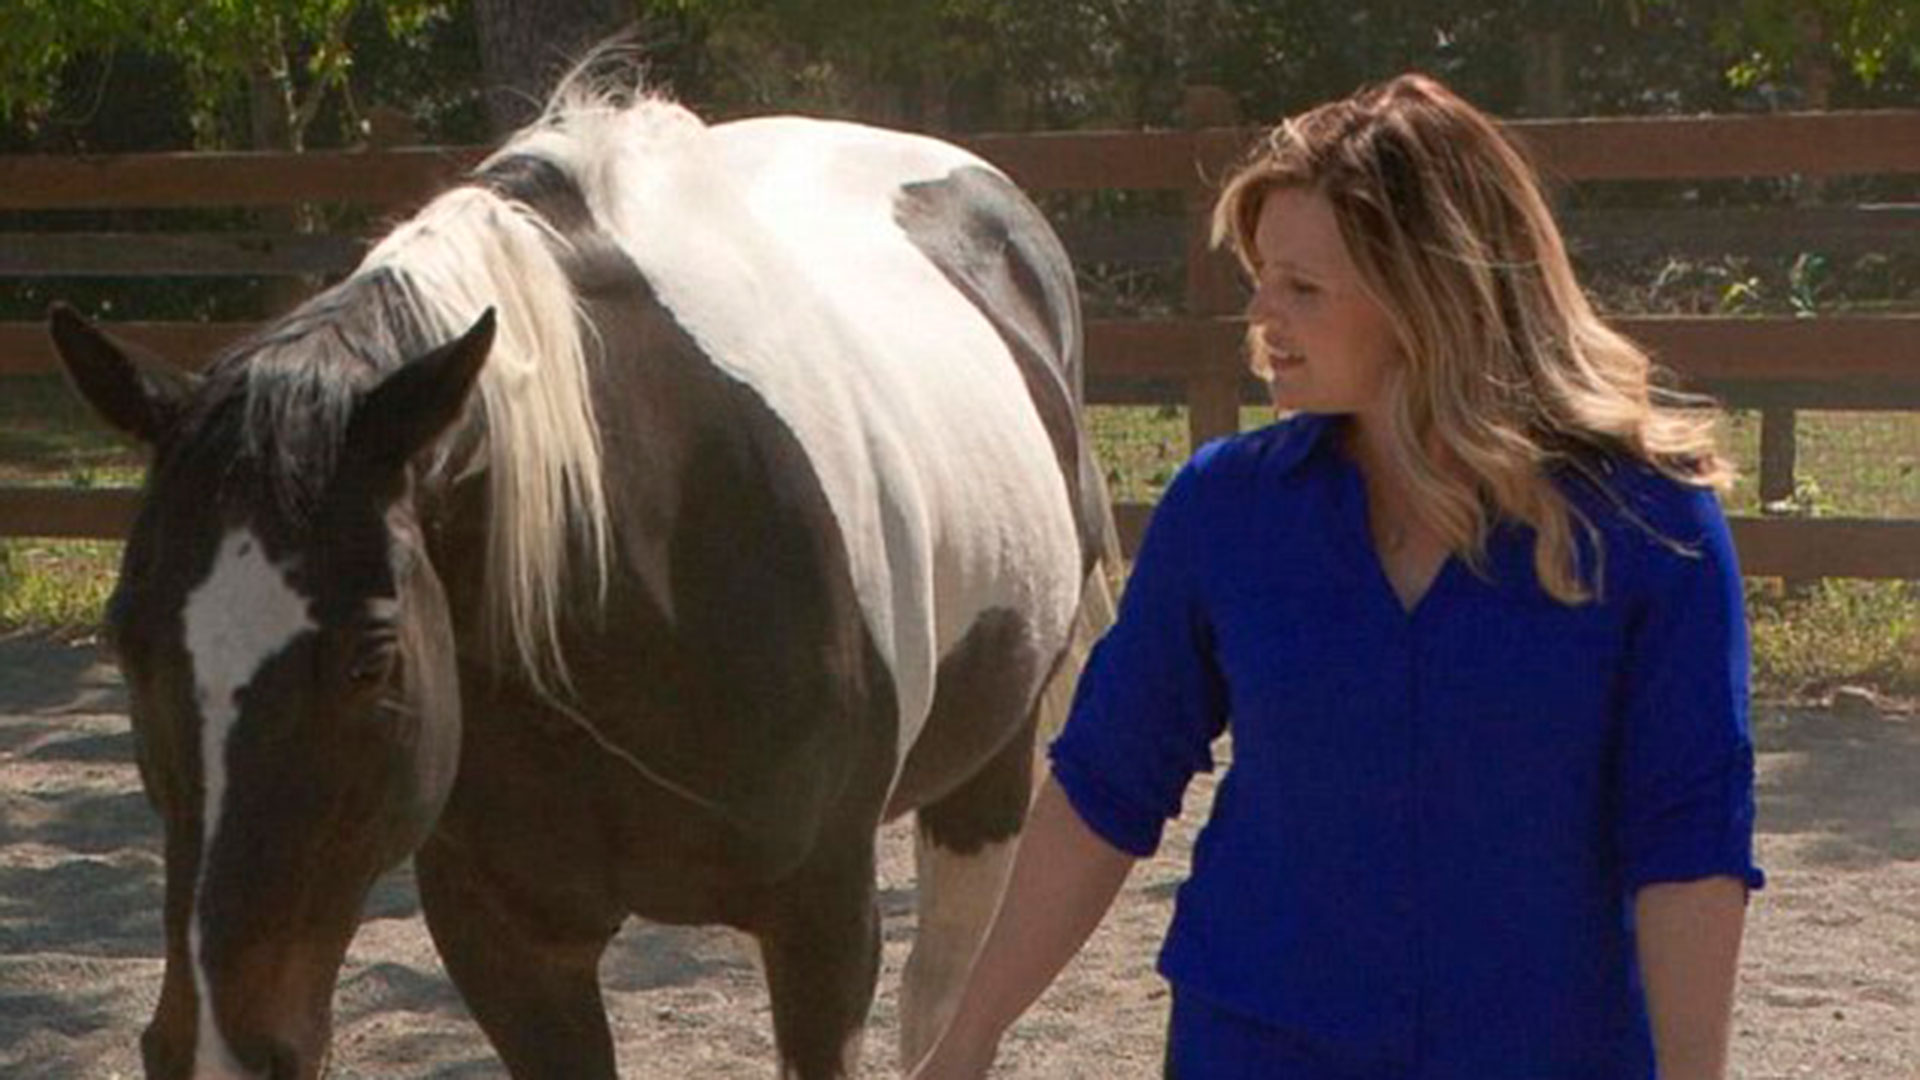 Jaycee se apoya en la terapia con animales para curar angustias y, en especial, con caballos que ella misma entrena